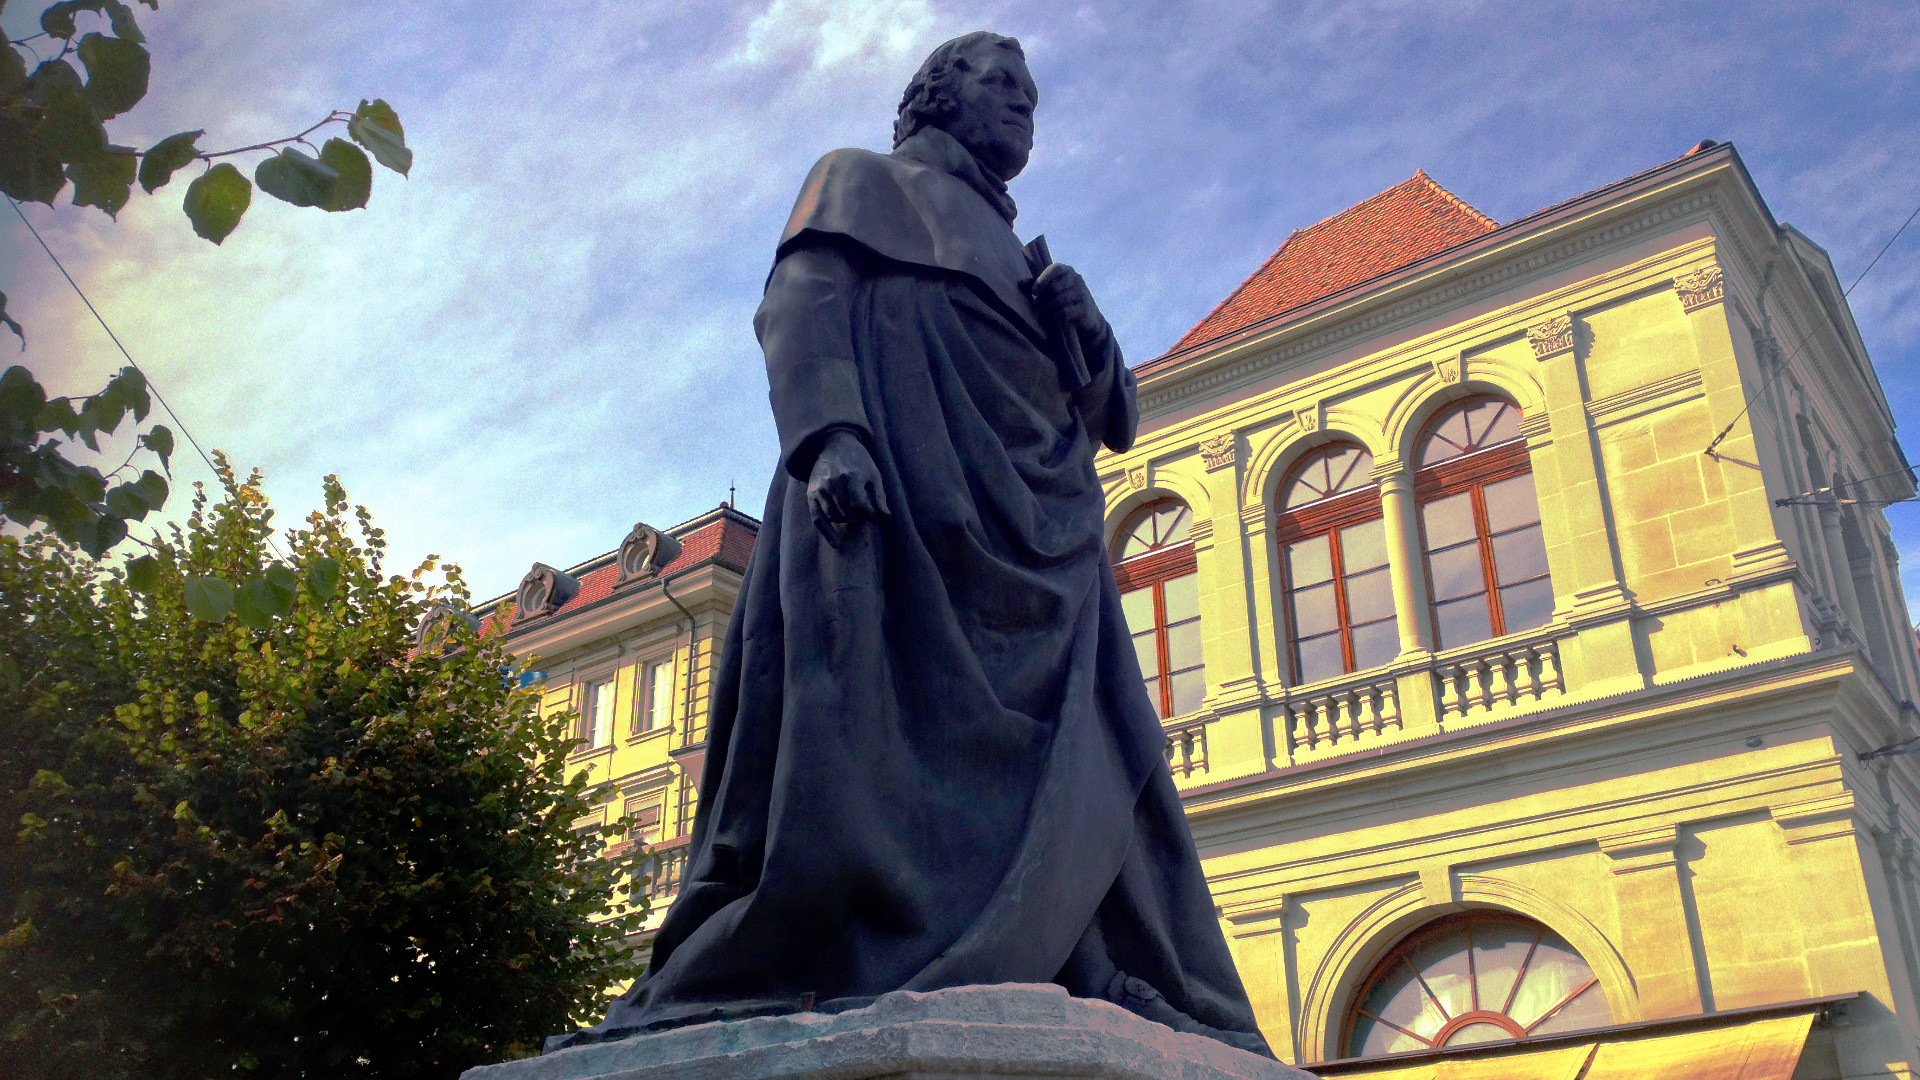 Standbild von Père Girard in der Freiburger Altstadt